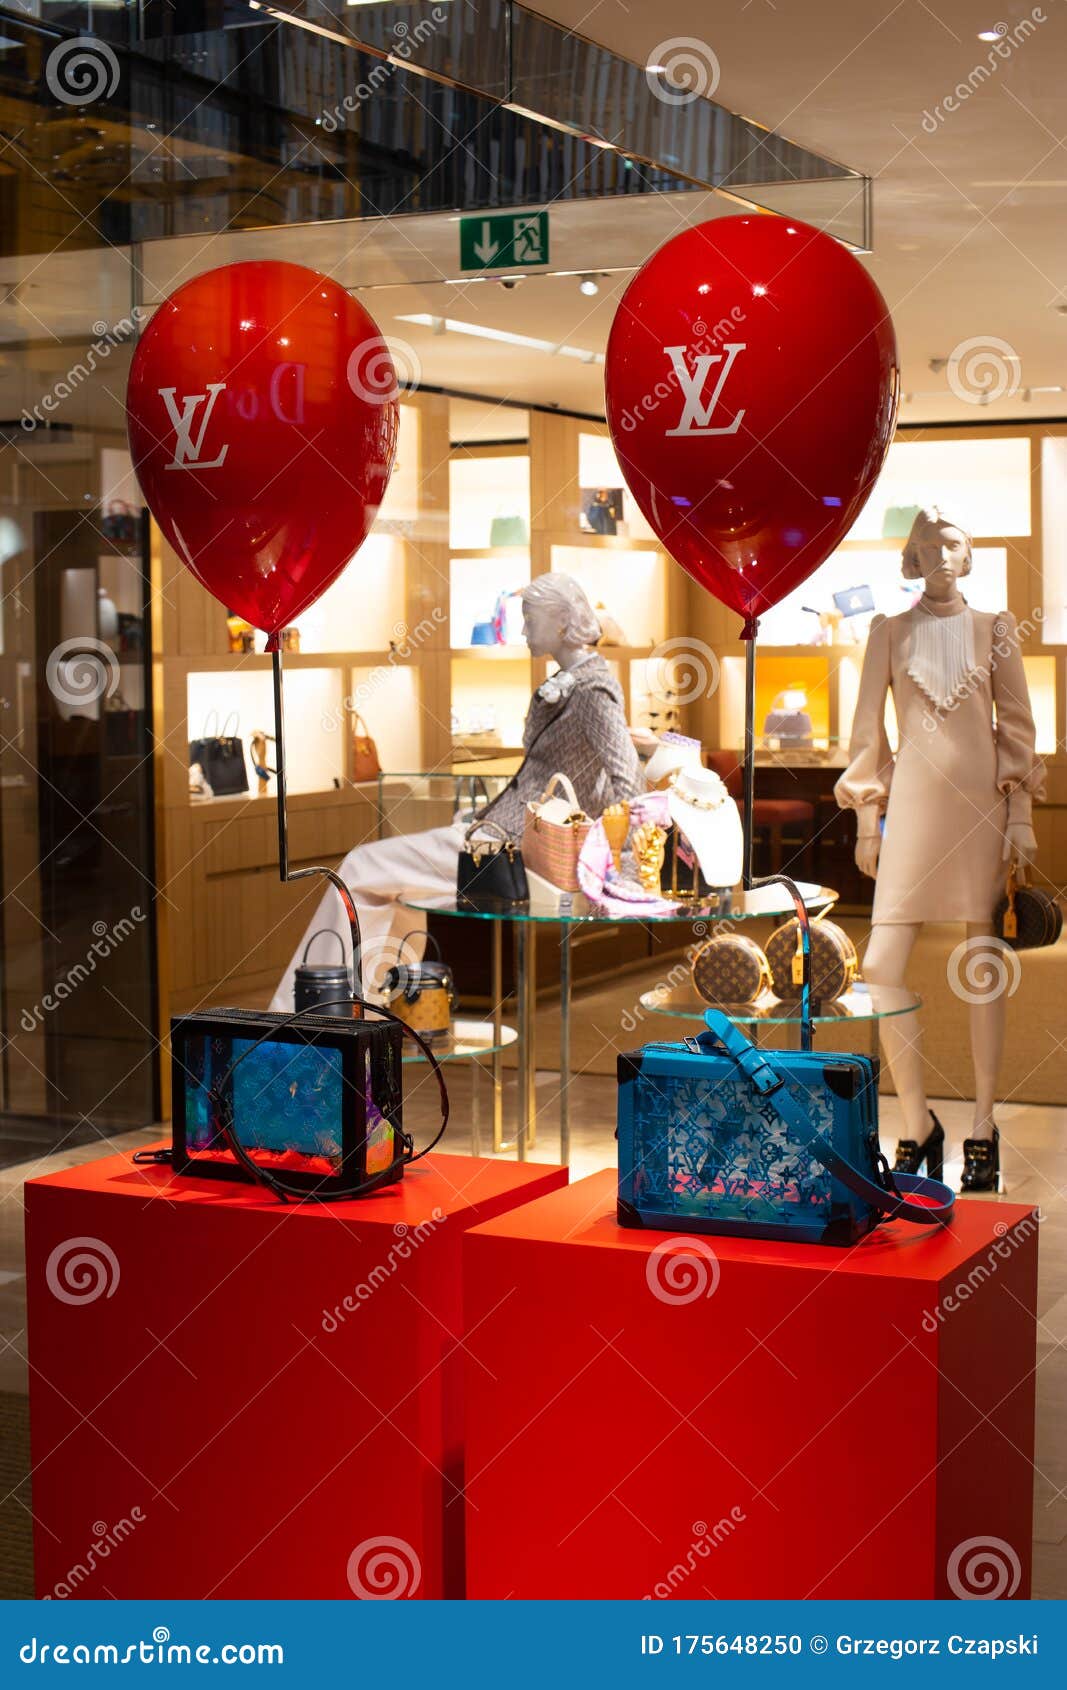 Modespeicher LV Louis Vuitton, Laden Mit Schaufenster, Taschen